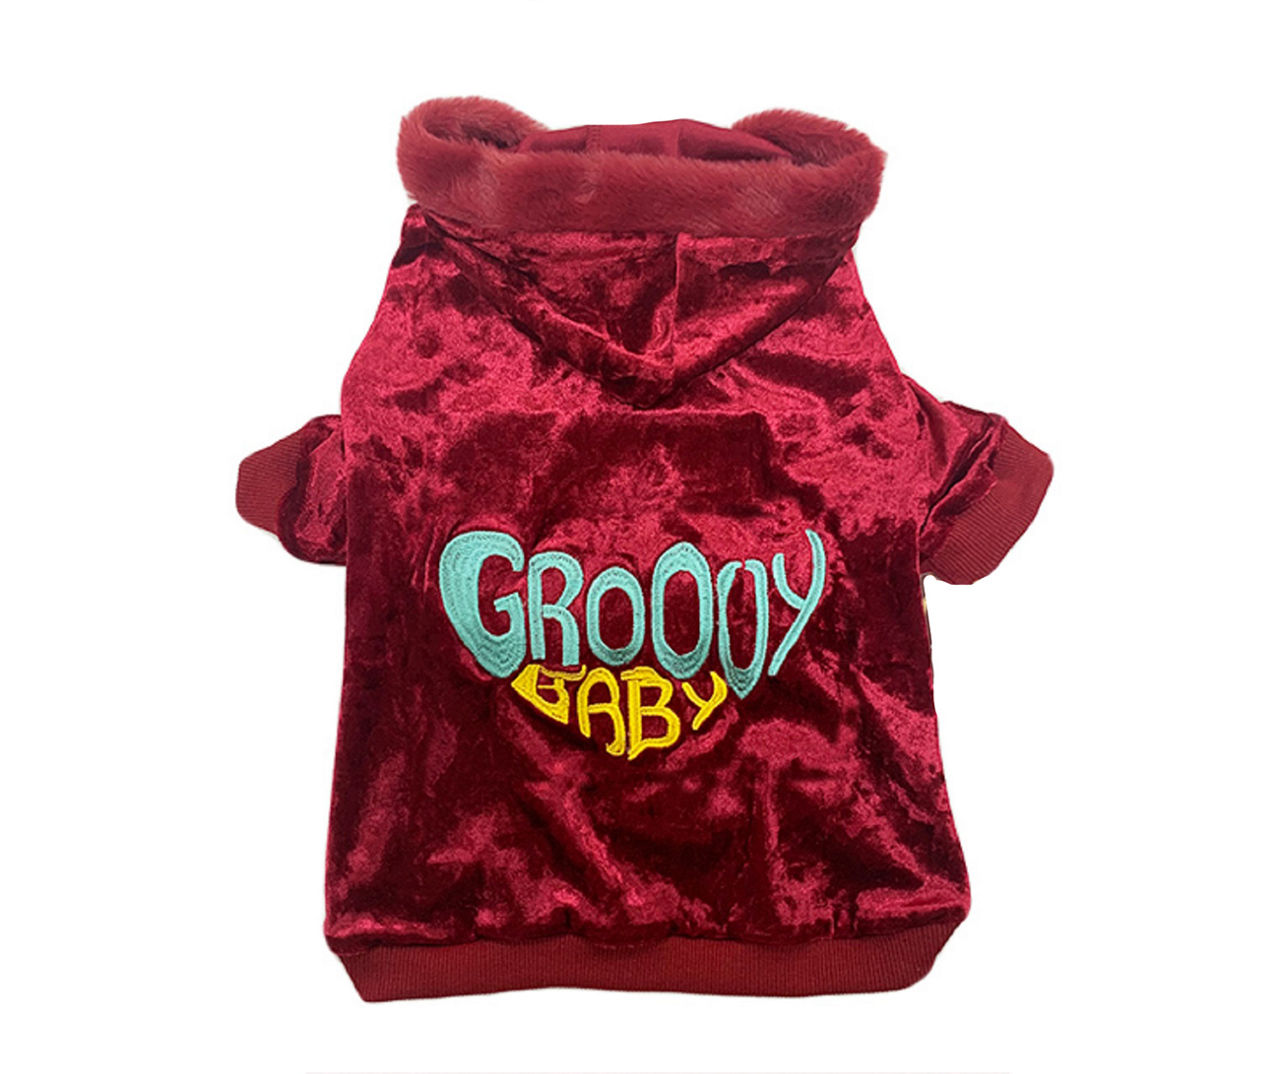 Pet X-Large "Groovy Baby" Red Velvet Hoodie